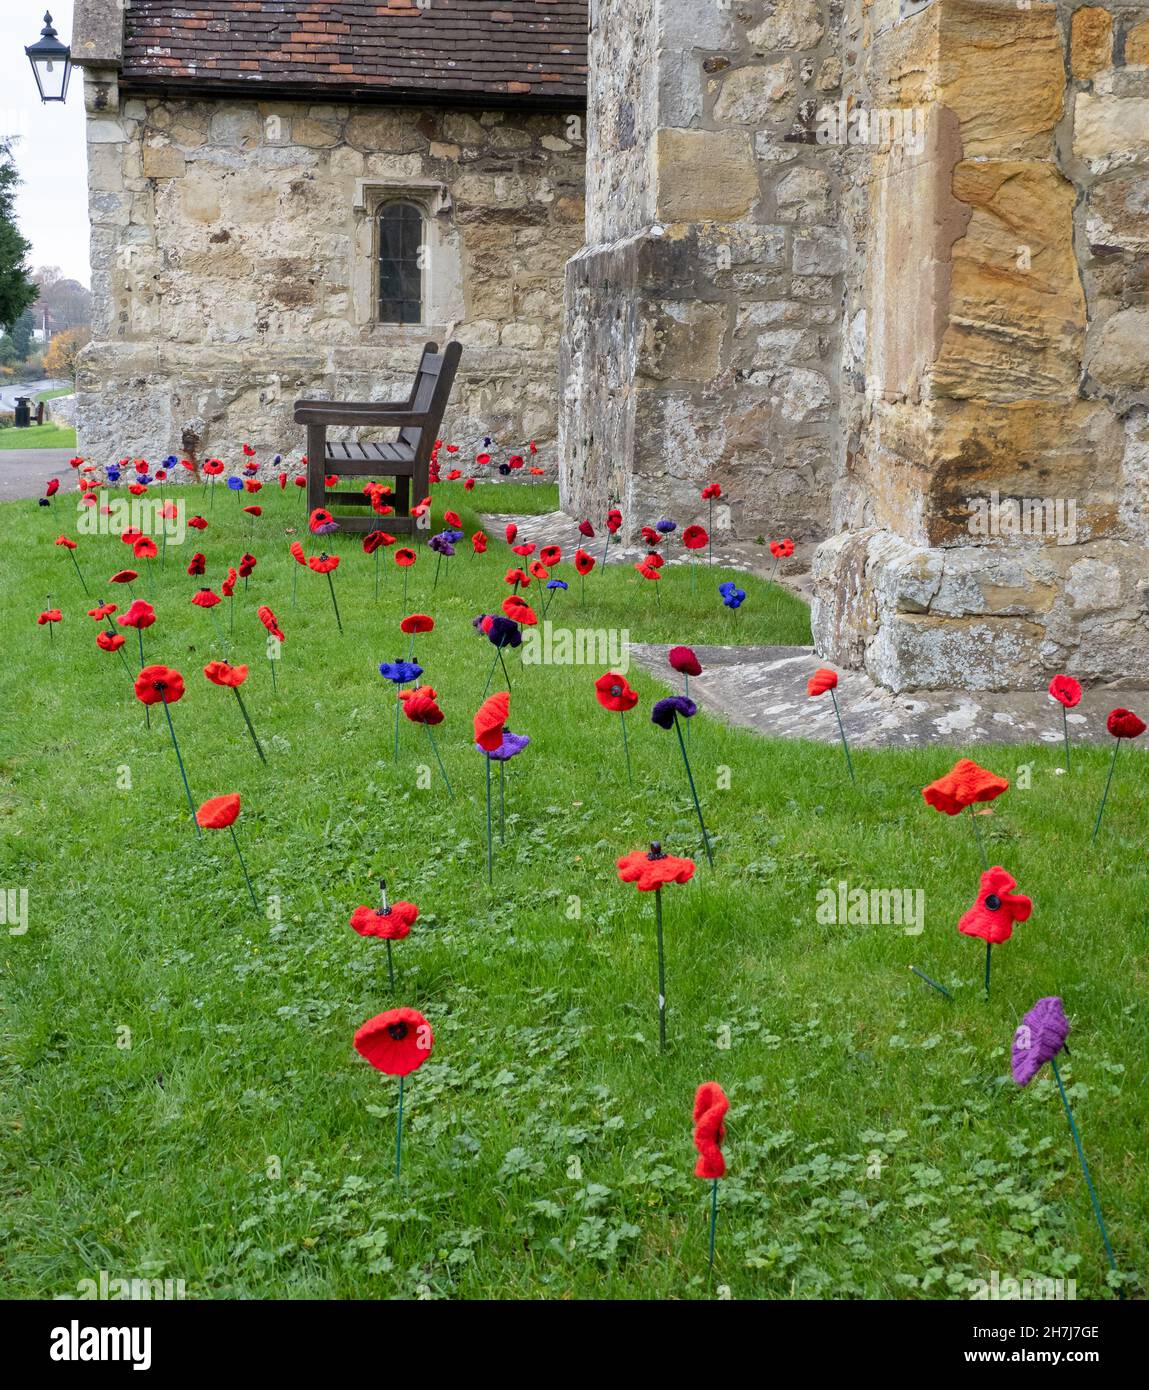 Amapolas tejidas adornan la iglesia de Biddenden en Kent como parte de las conmemoraciones del domingo de recuerdo y del día del armisticio en el Reino Unido Foto de stock